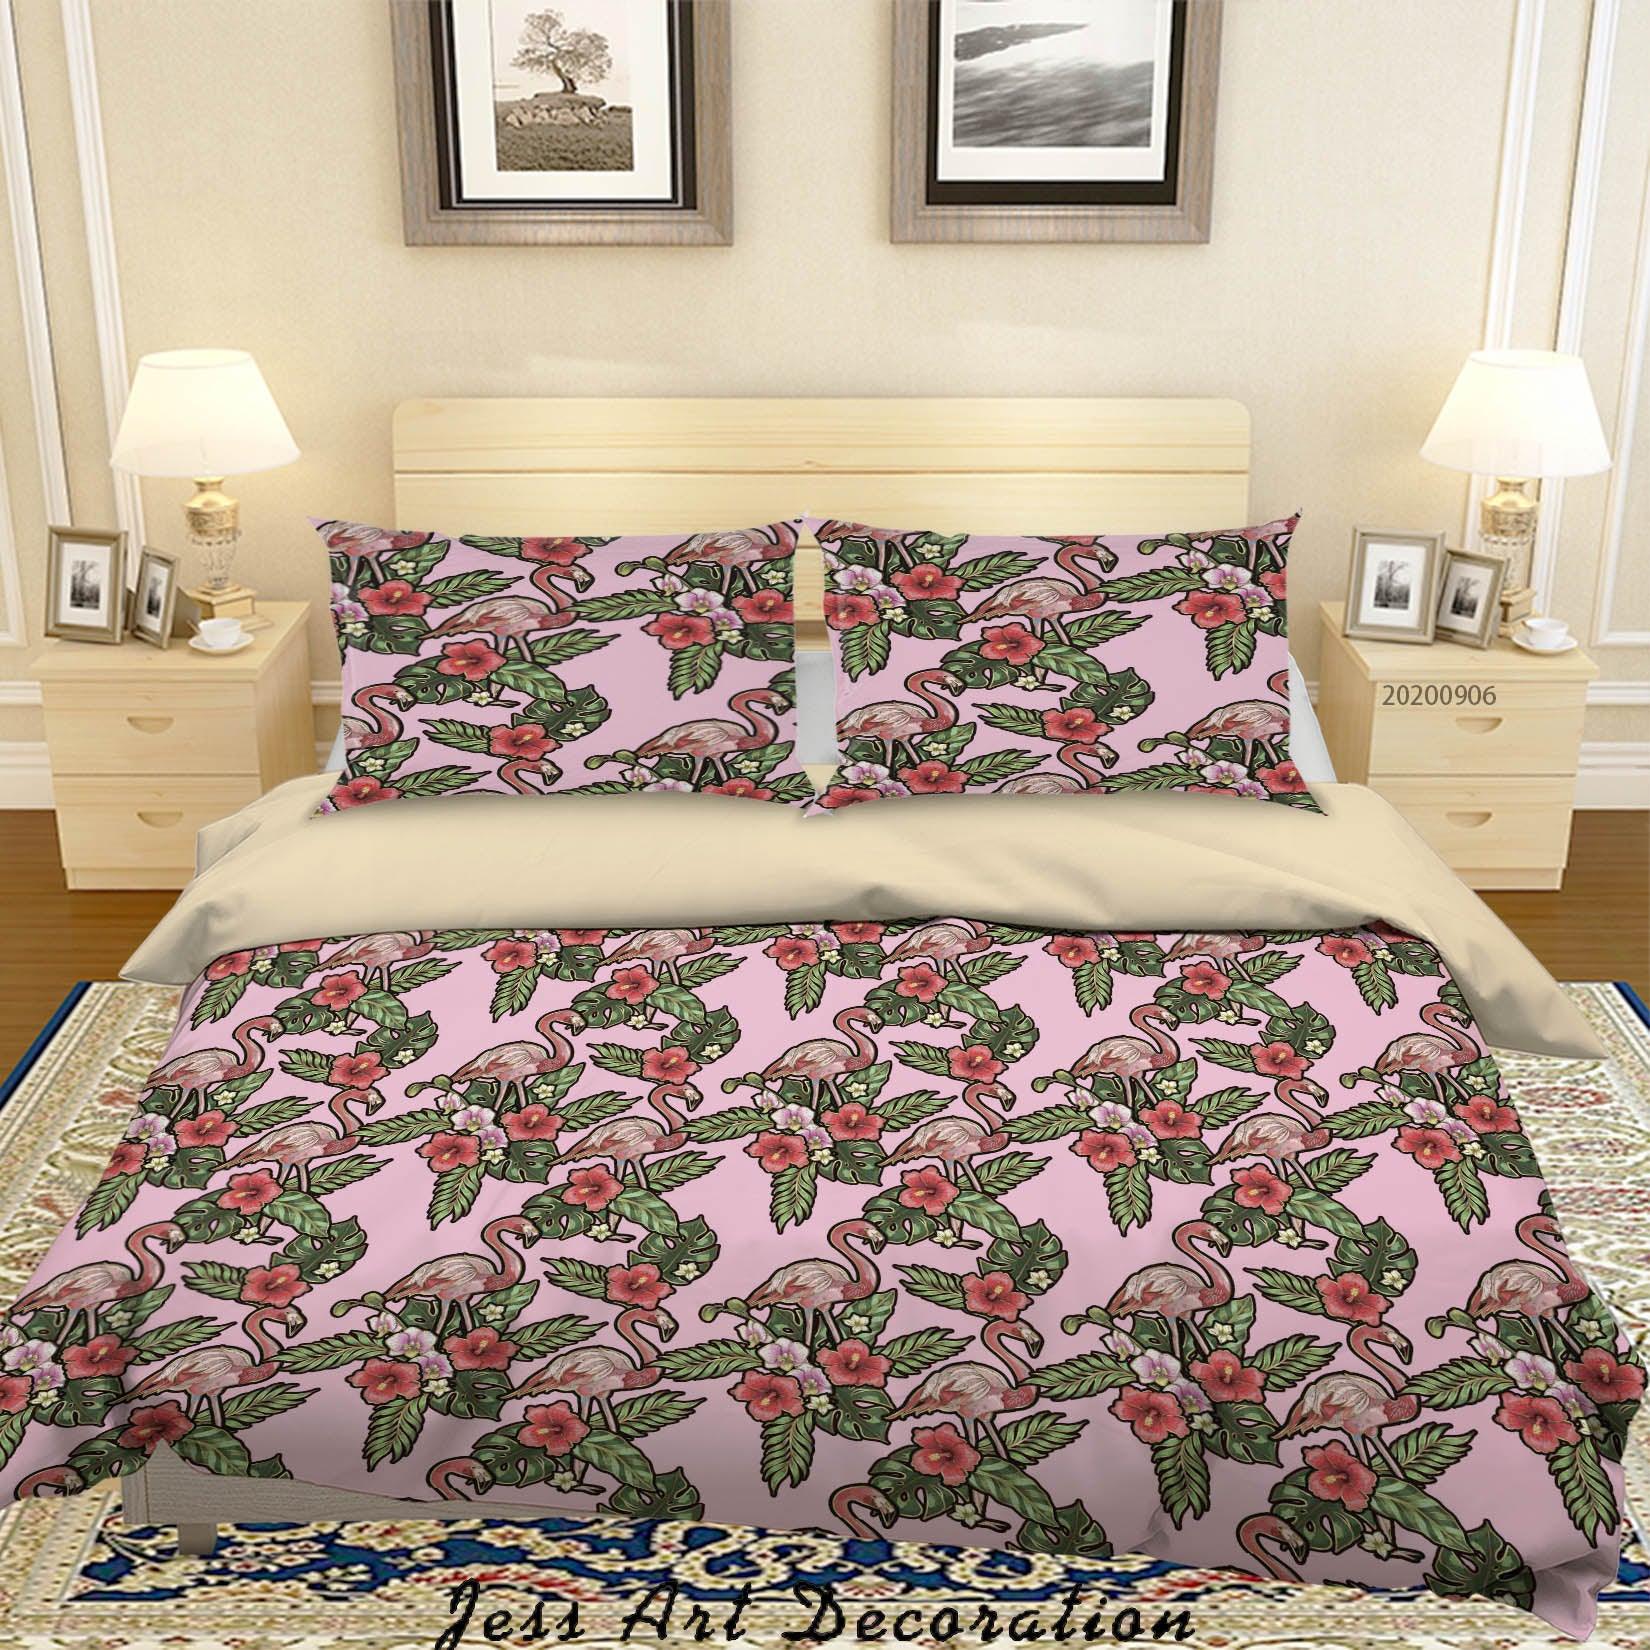 3D Vintage Leaves Flamingo Floral Pattern Quilt Cover Set Bedding Set Duvet Cover Pillowcases WJ 3654- Jess Art Decoration